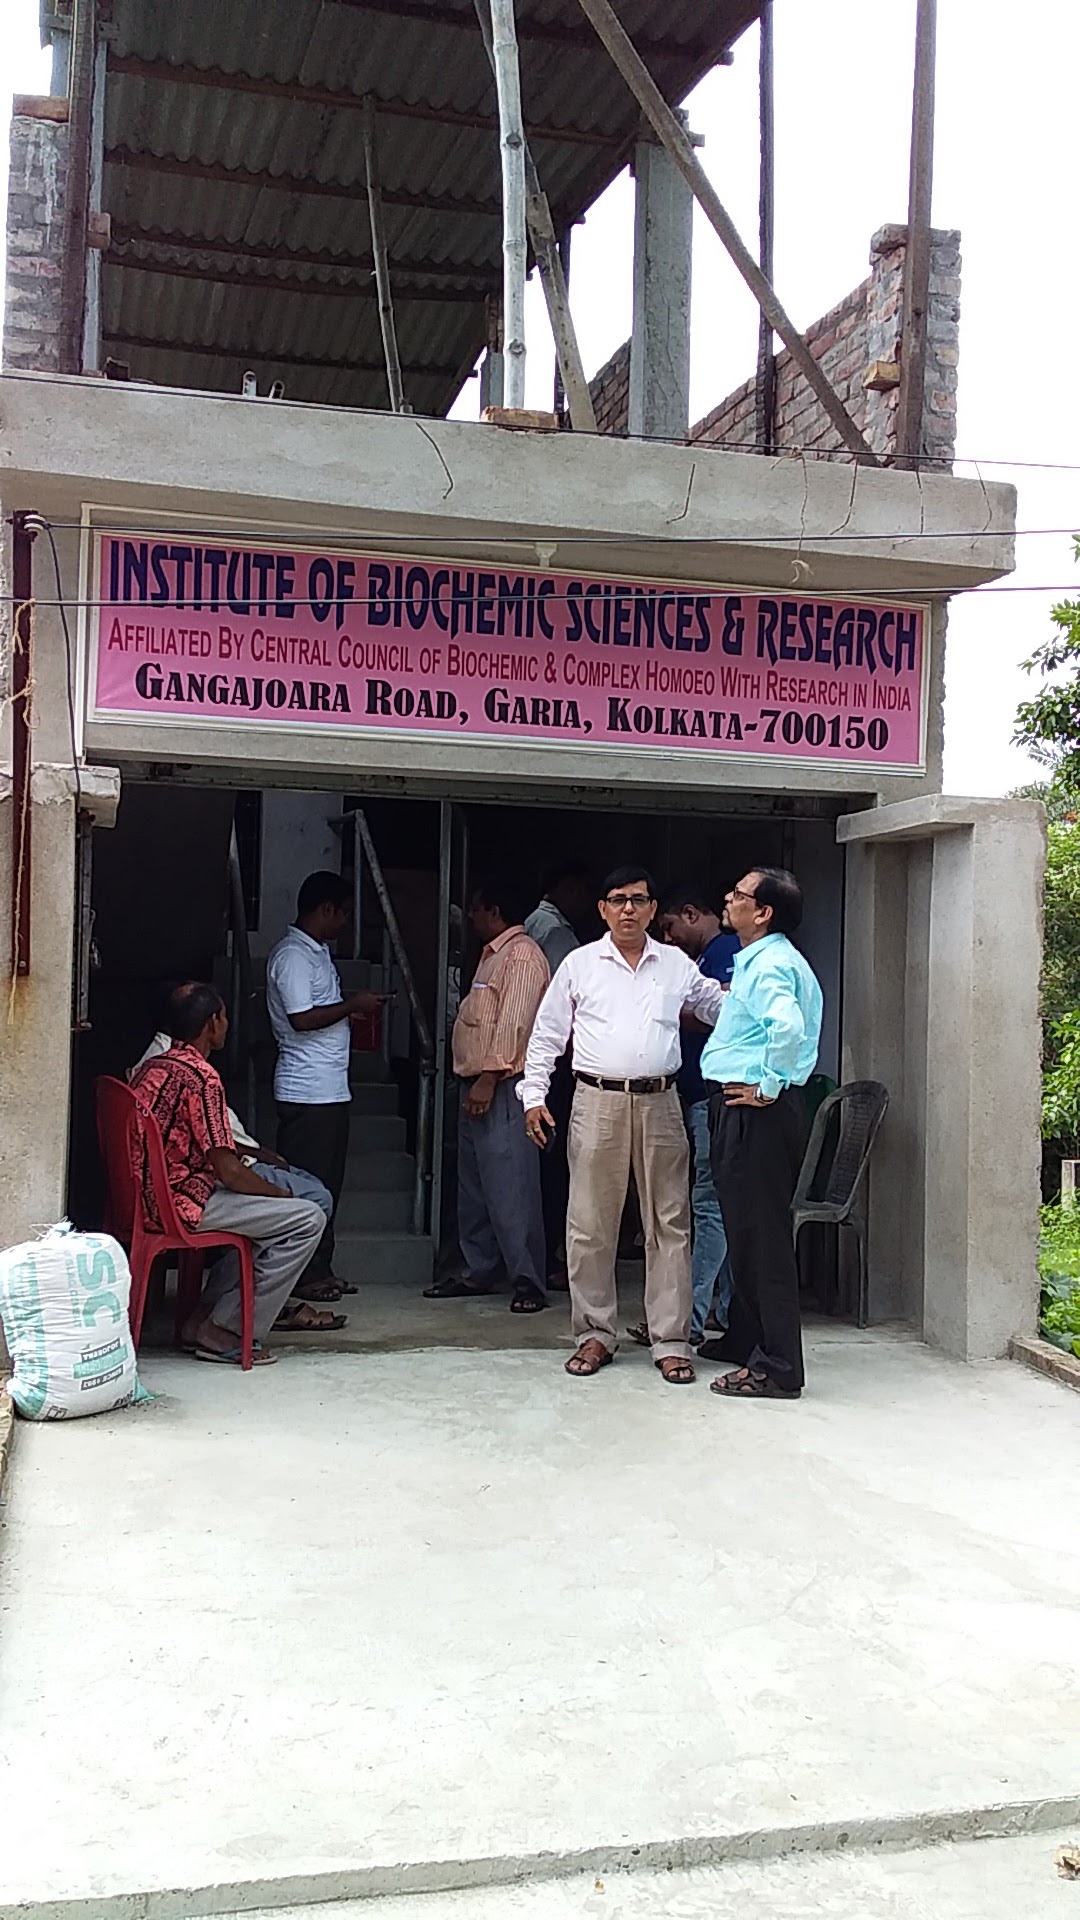 Institute of Biochemic Sciences & Research